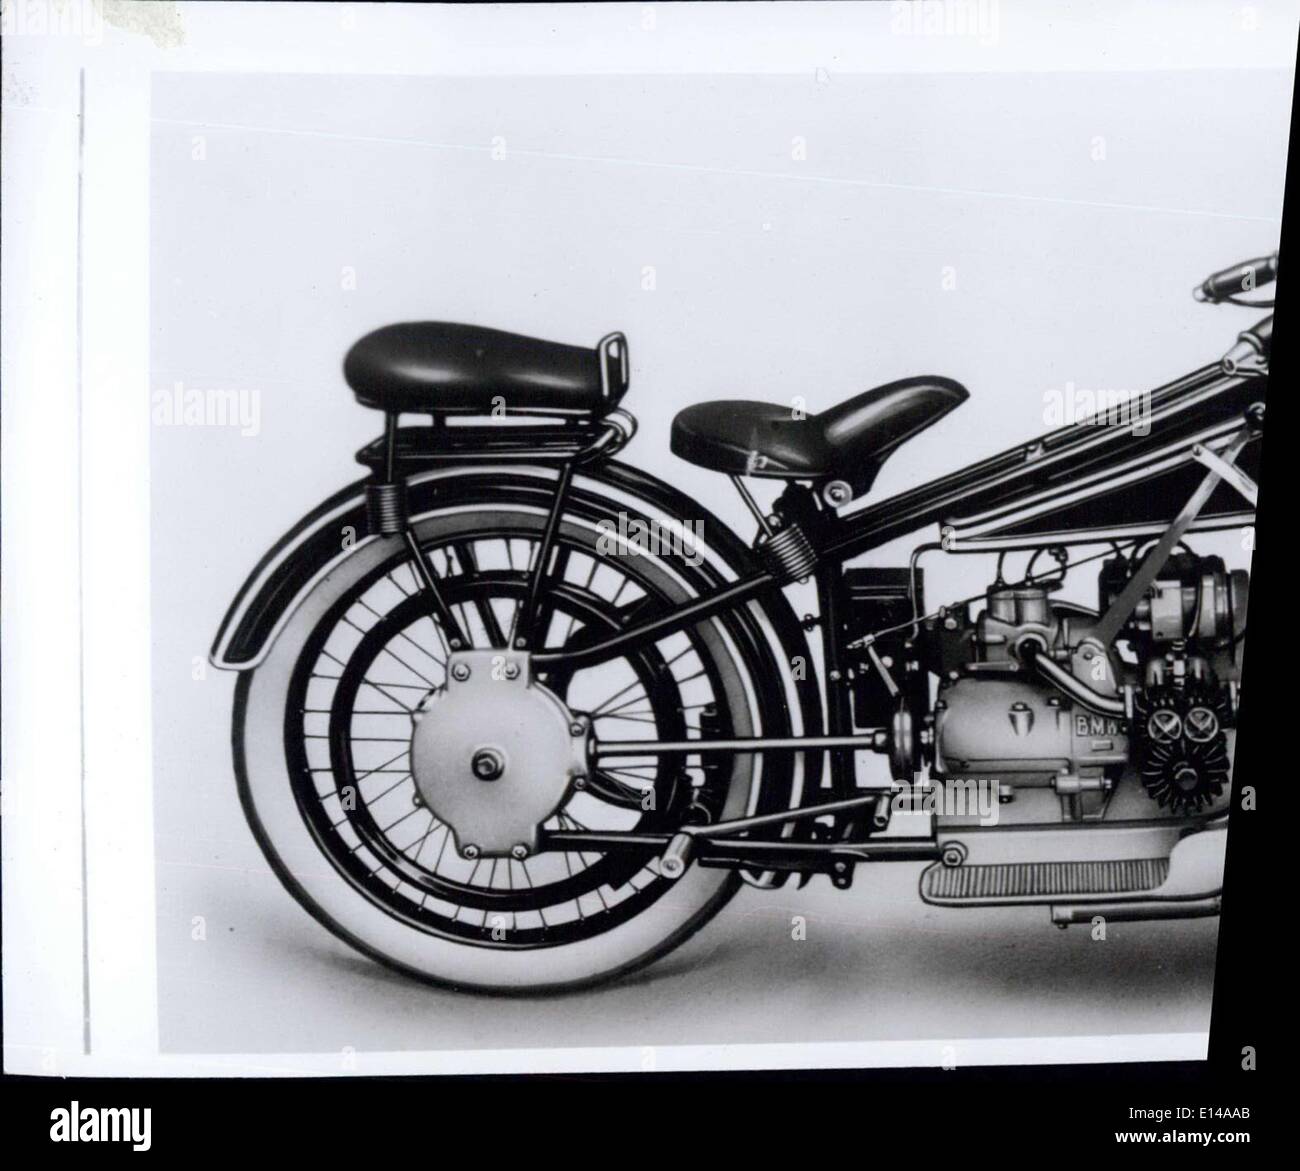 17. April 2012 - '' (Illegible)'' Irst BMW Motorrad ausgestattet '' (Illegible)'' Tor'', 2 horizontale Zylinder, '' (Illegible)'' Rdan'' Achse, Doppel-Steeltube '' (Illegible)'' e Empfindung von 1923 Paris. Stockfoto